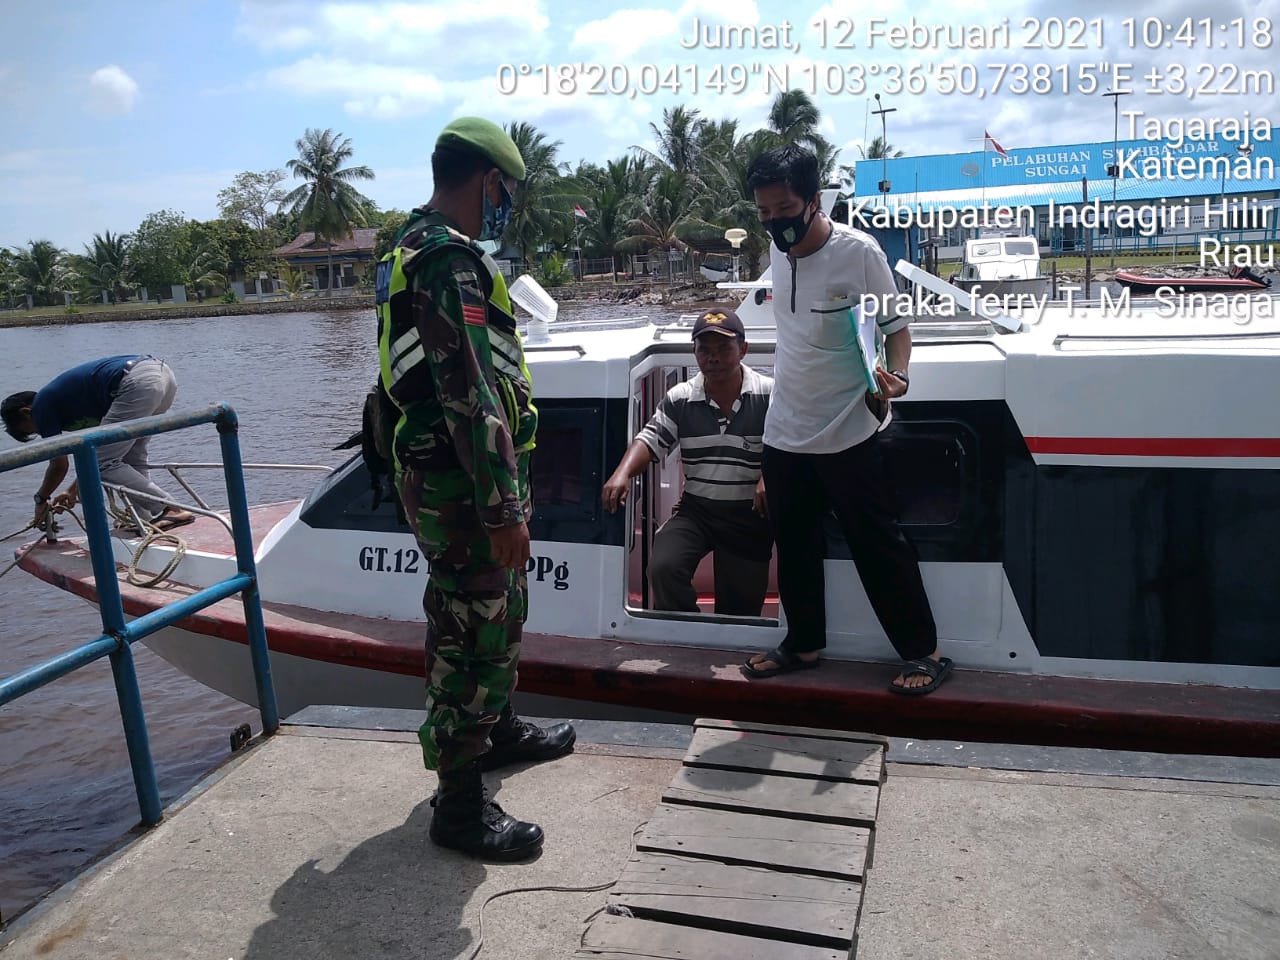 Praka Feri Pantau Aktifitas di Pelabuhan Syahbandar Guntung